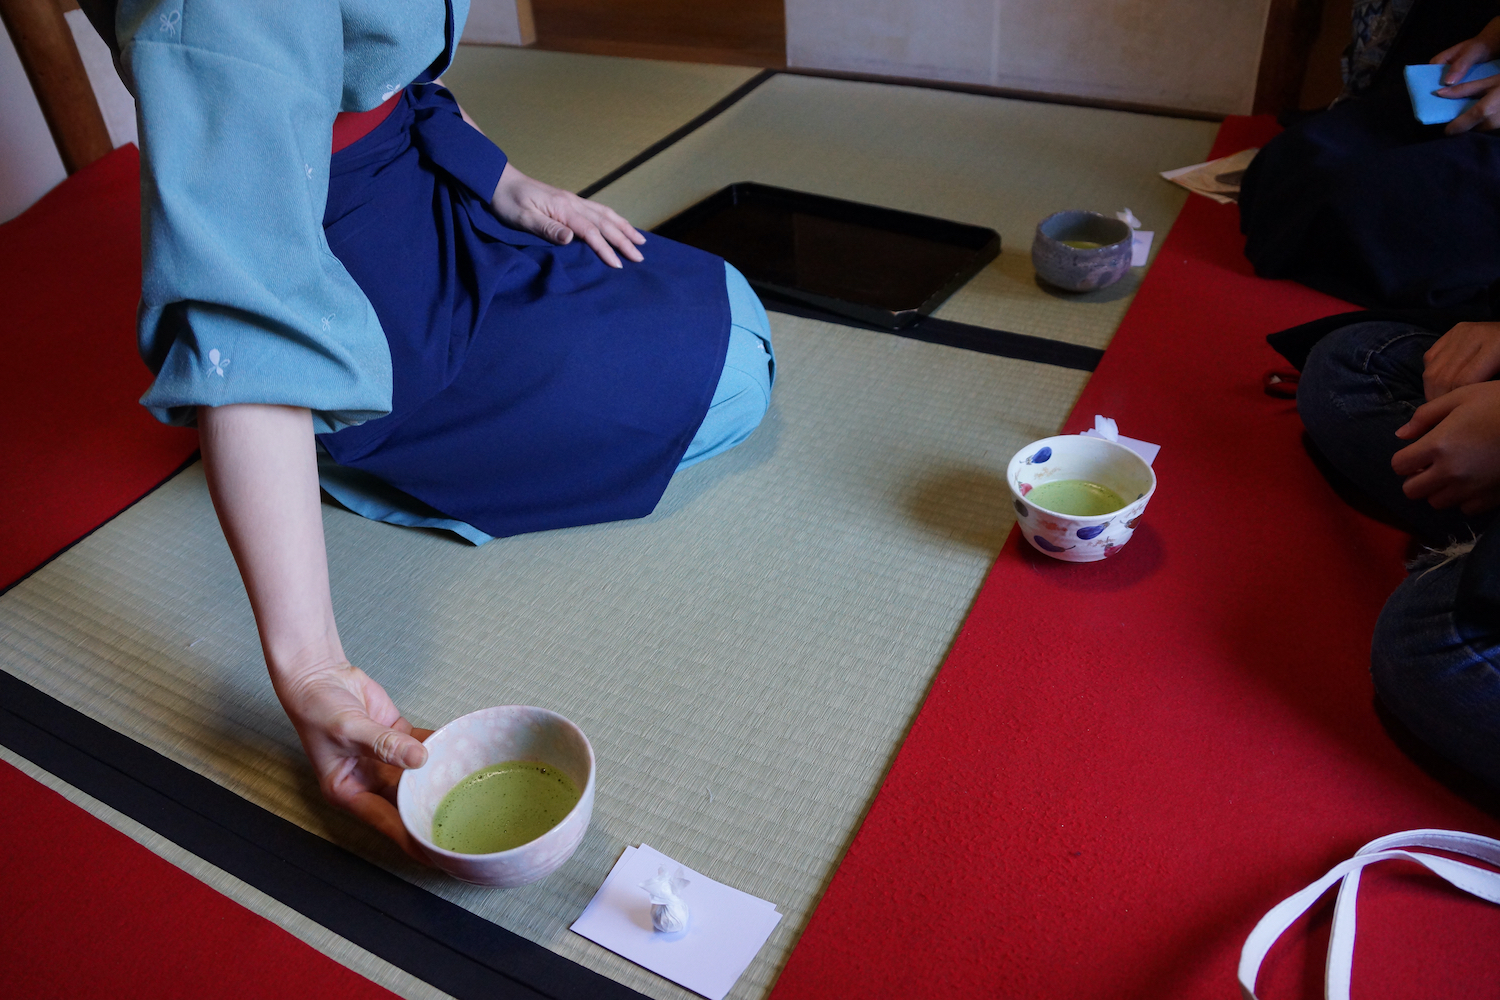 Japan culture matcha green tea ceremony.